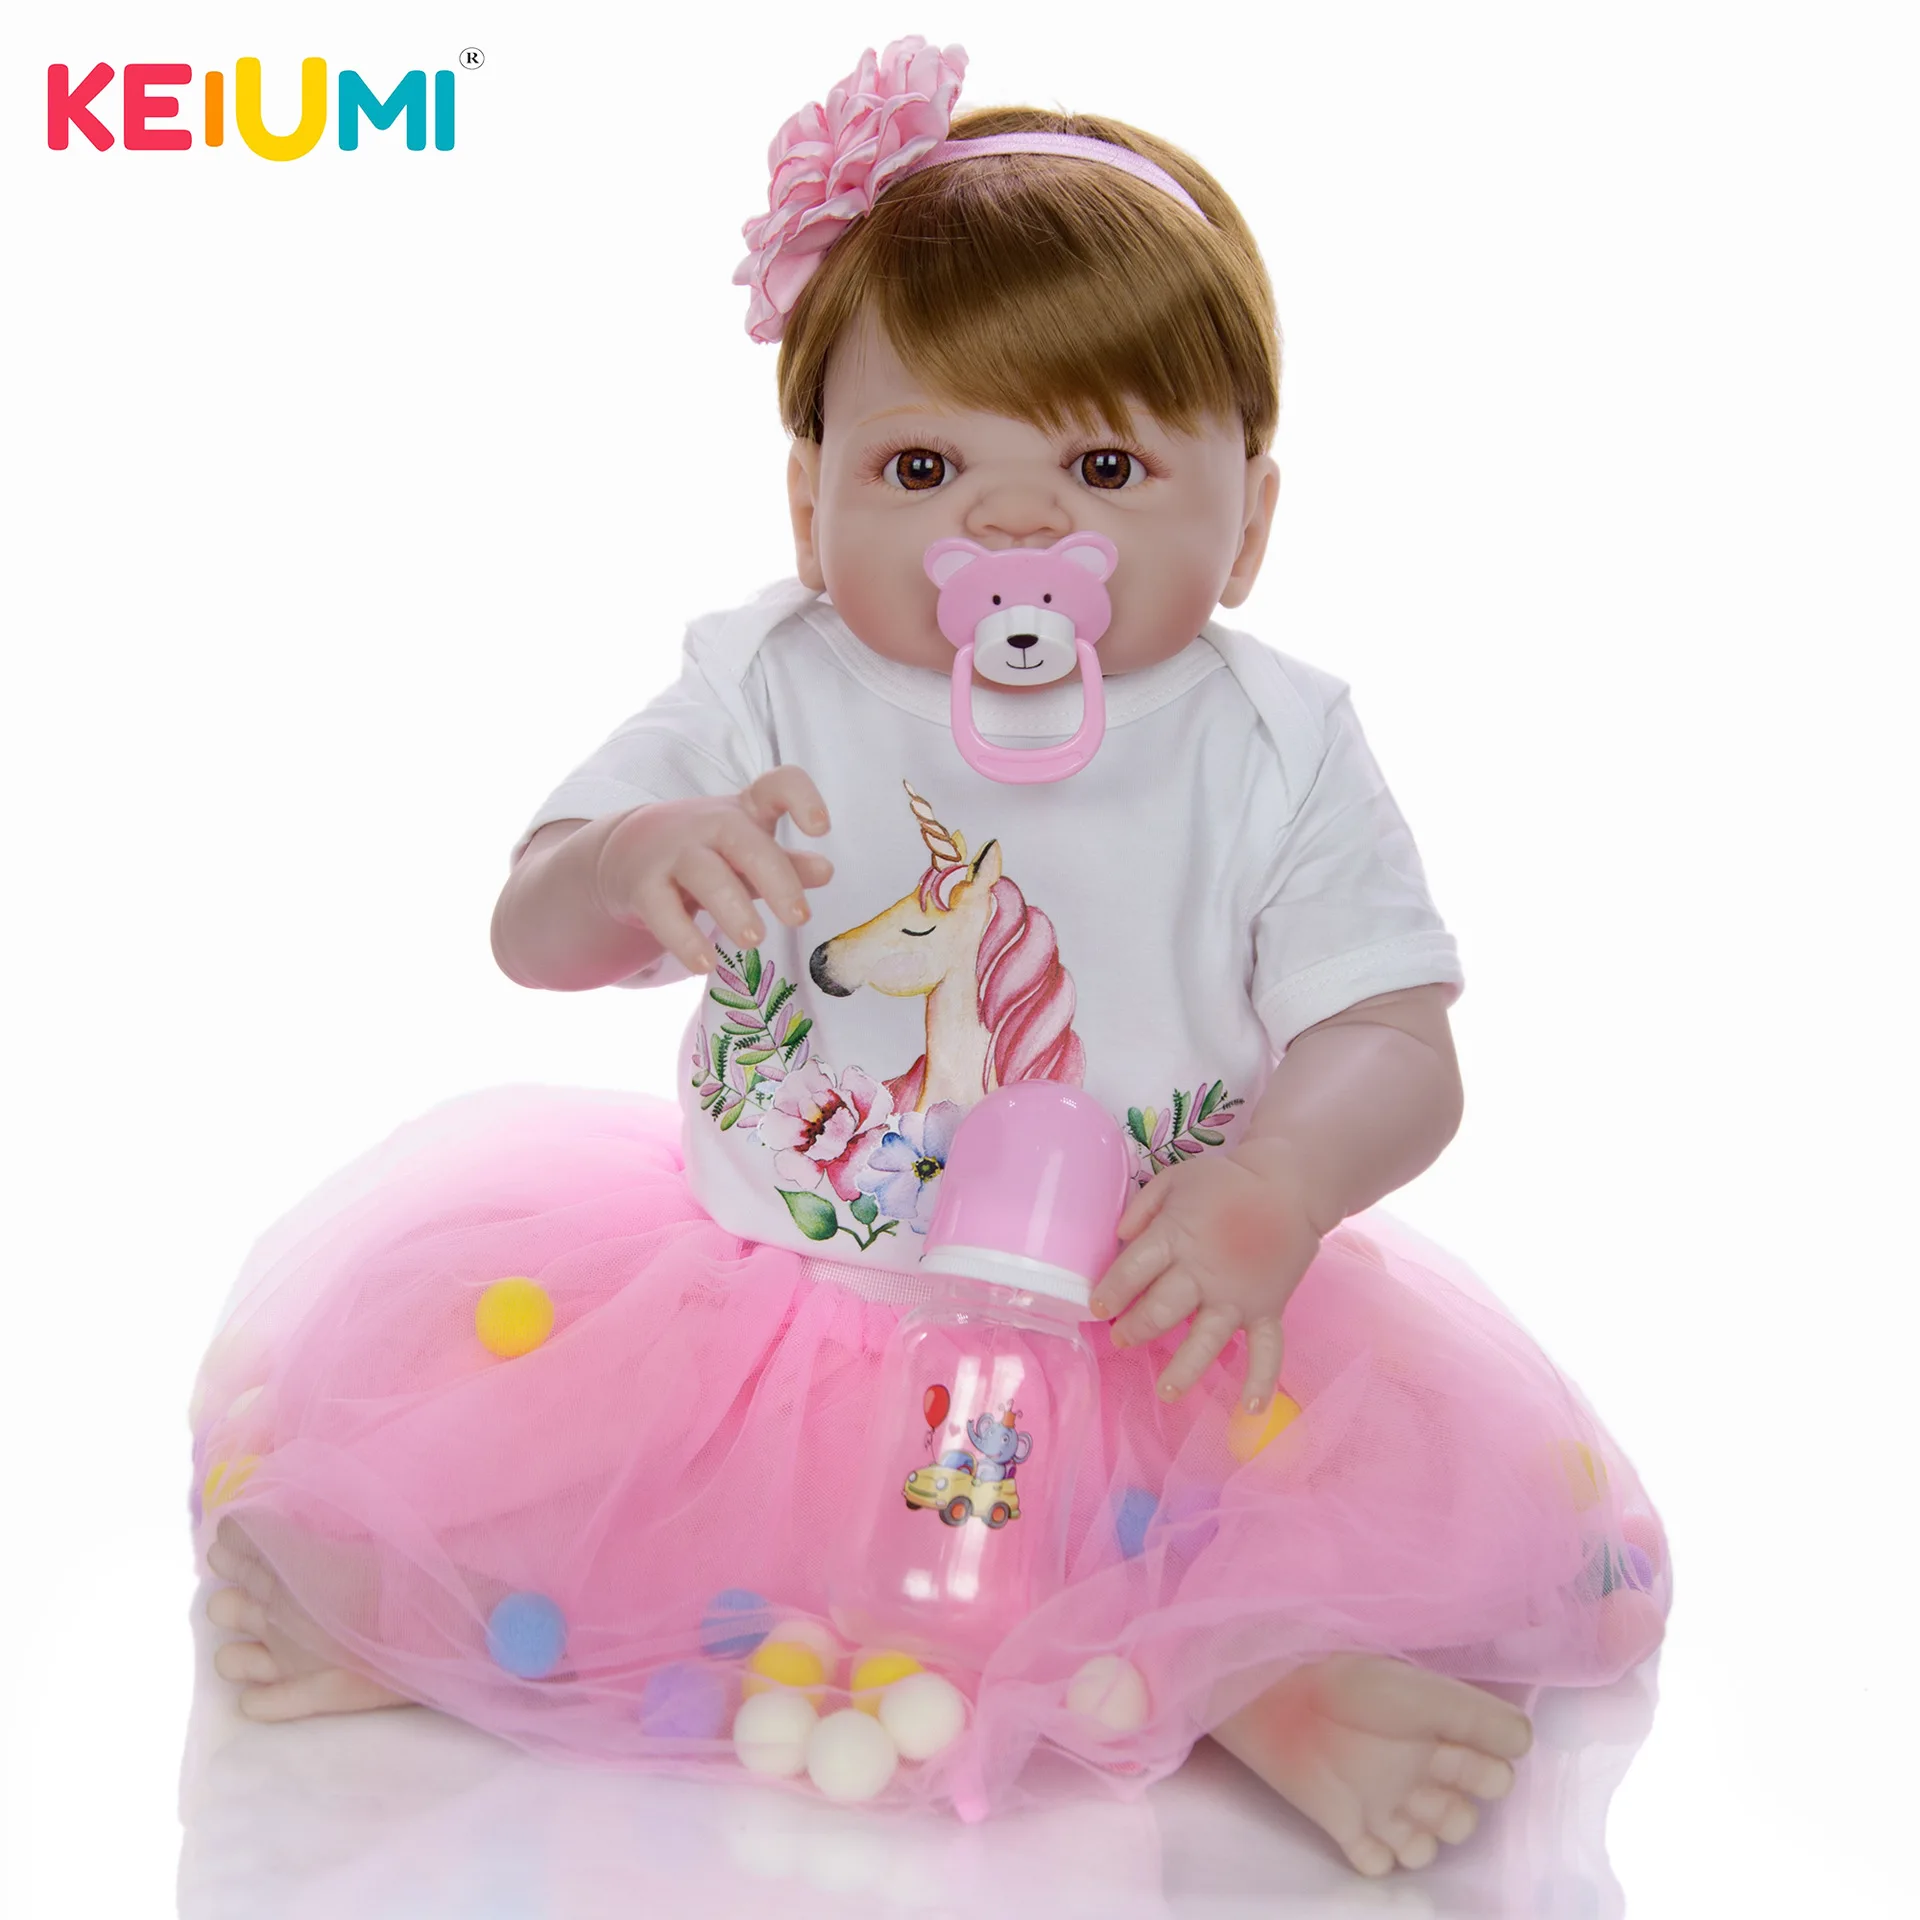  Keiumi Reborn Baby Doll 23-Inch 57 Cm Model Infant All Silica Gel GIRL'S